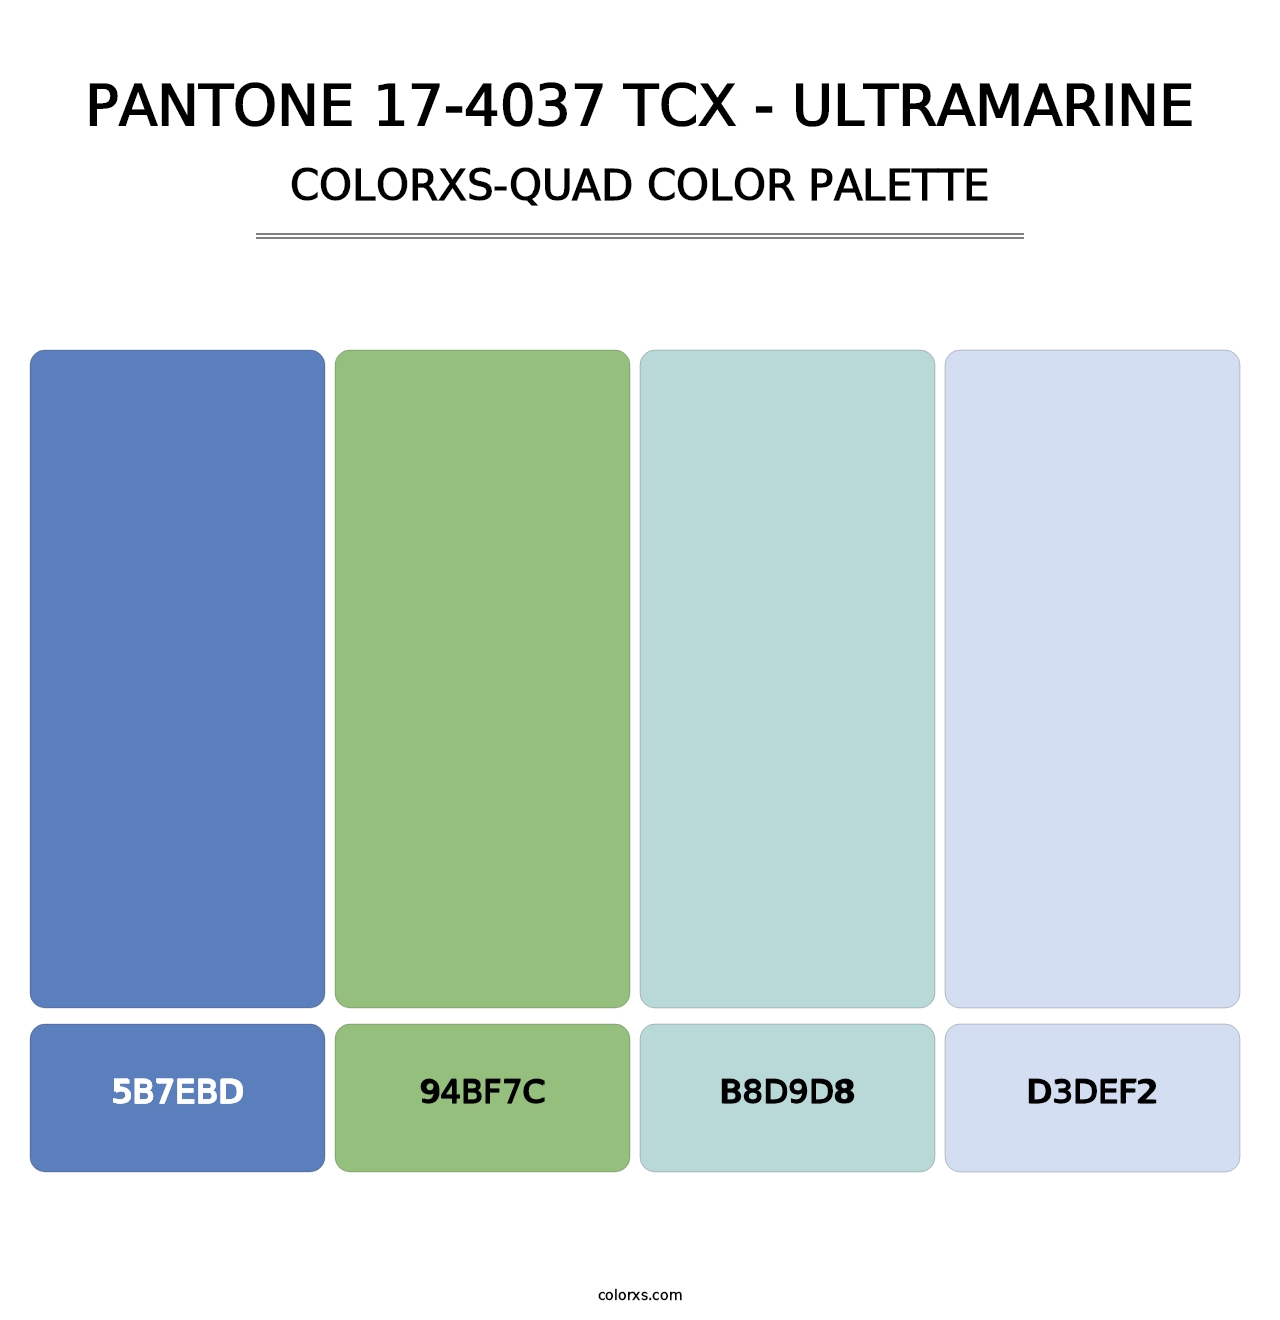 PANTONE 17-4037 TCX - Ultramarine - Colorxs Quad Palette